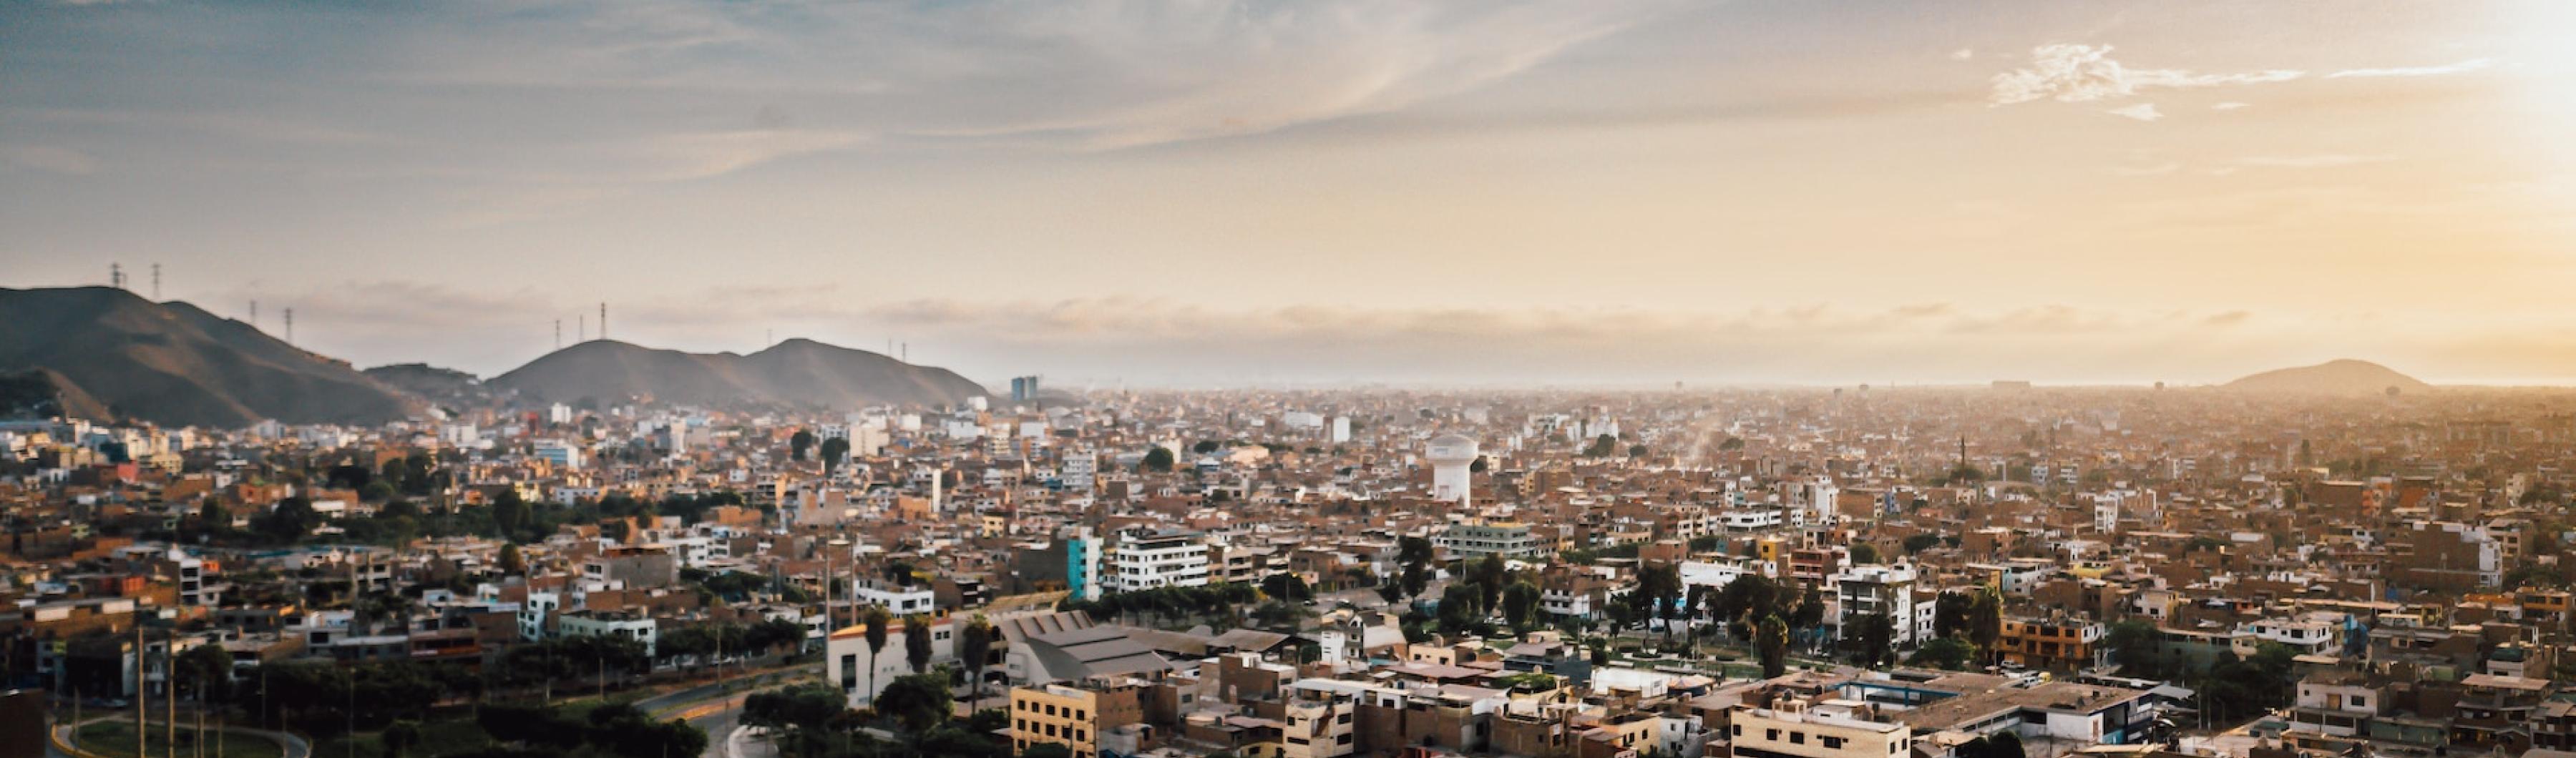 Uma imagem de Lima, Peru